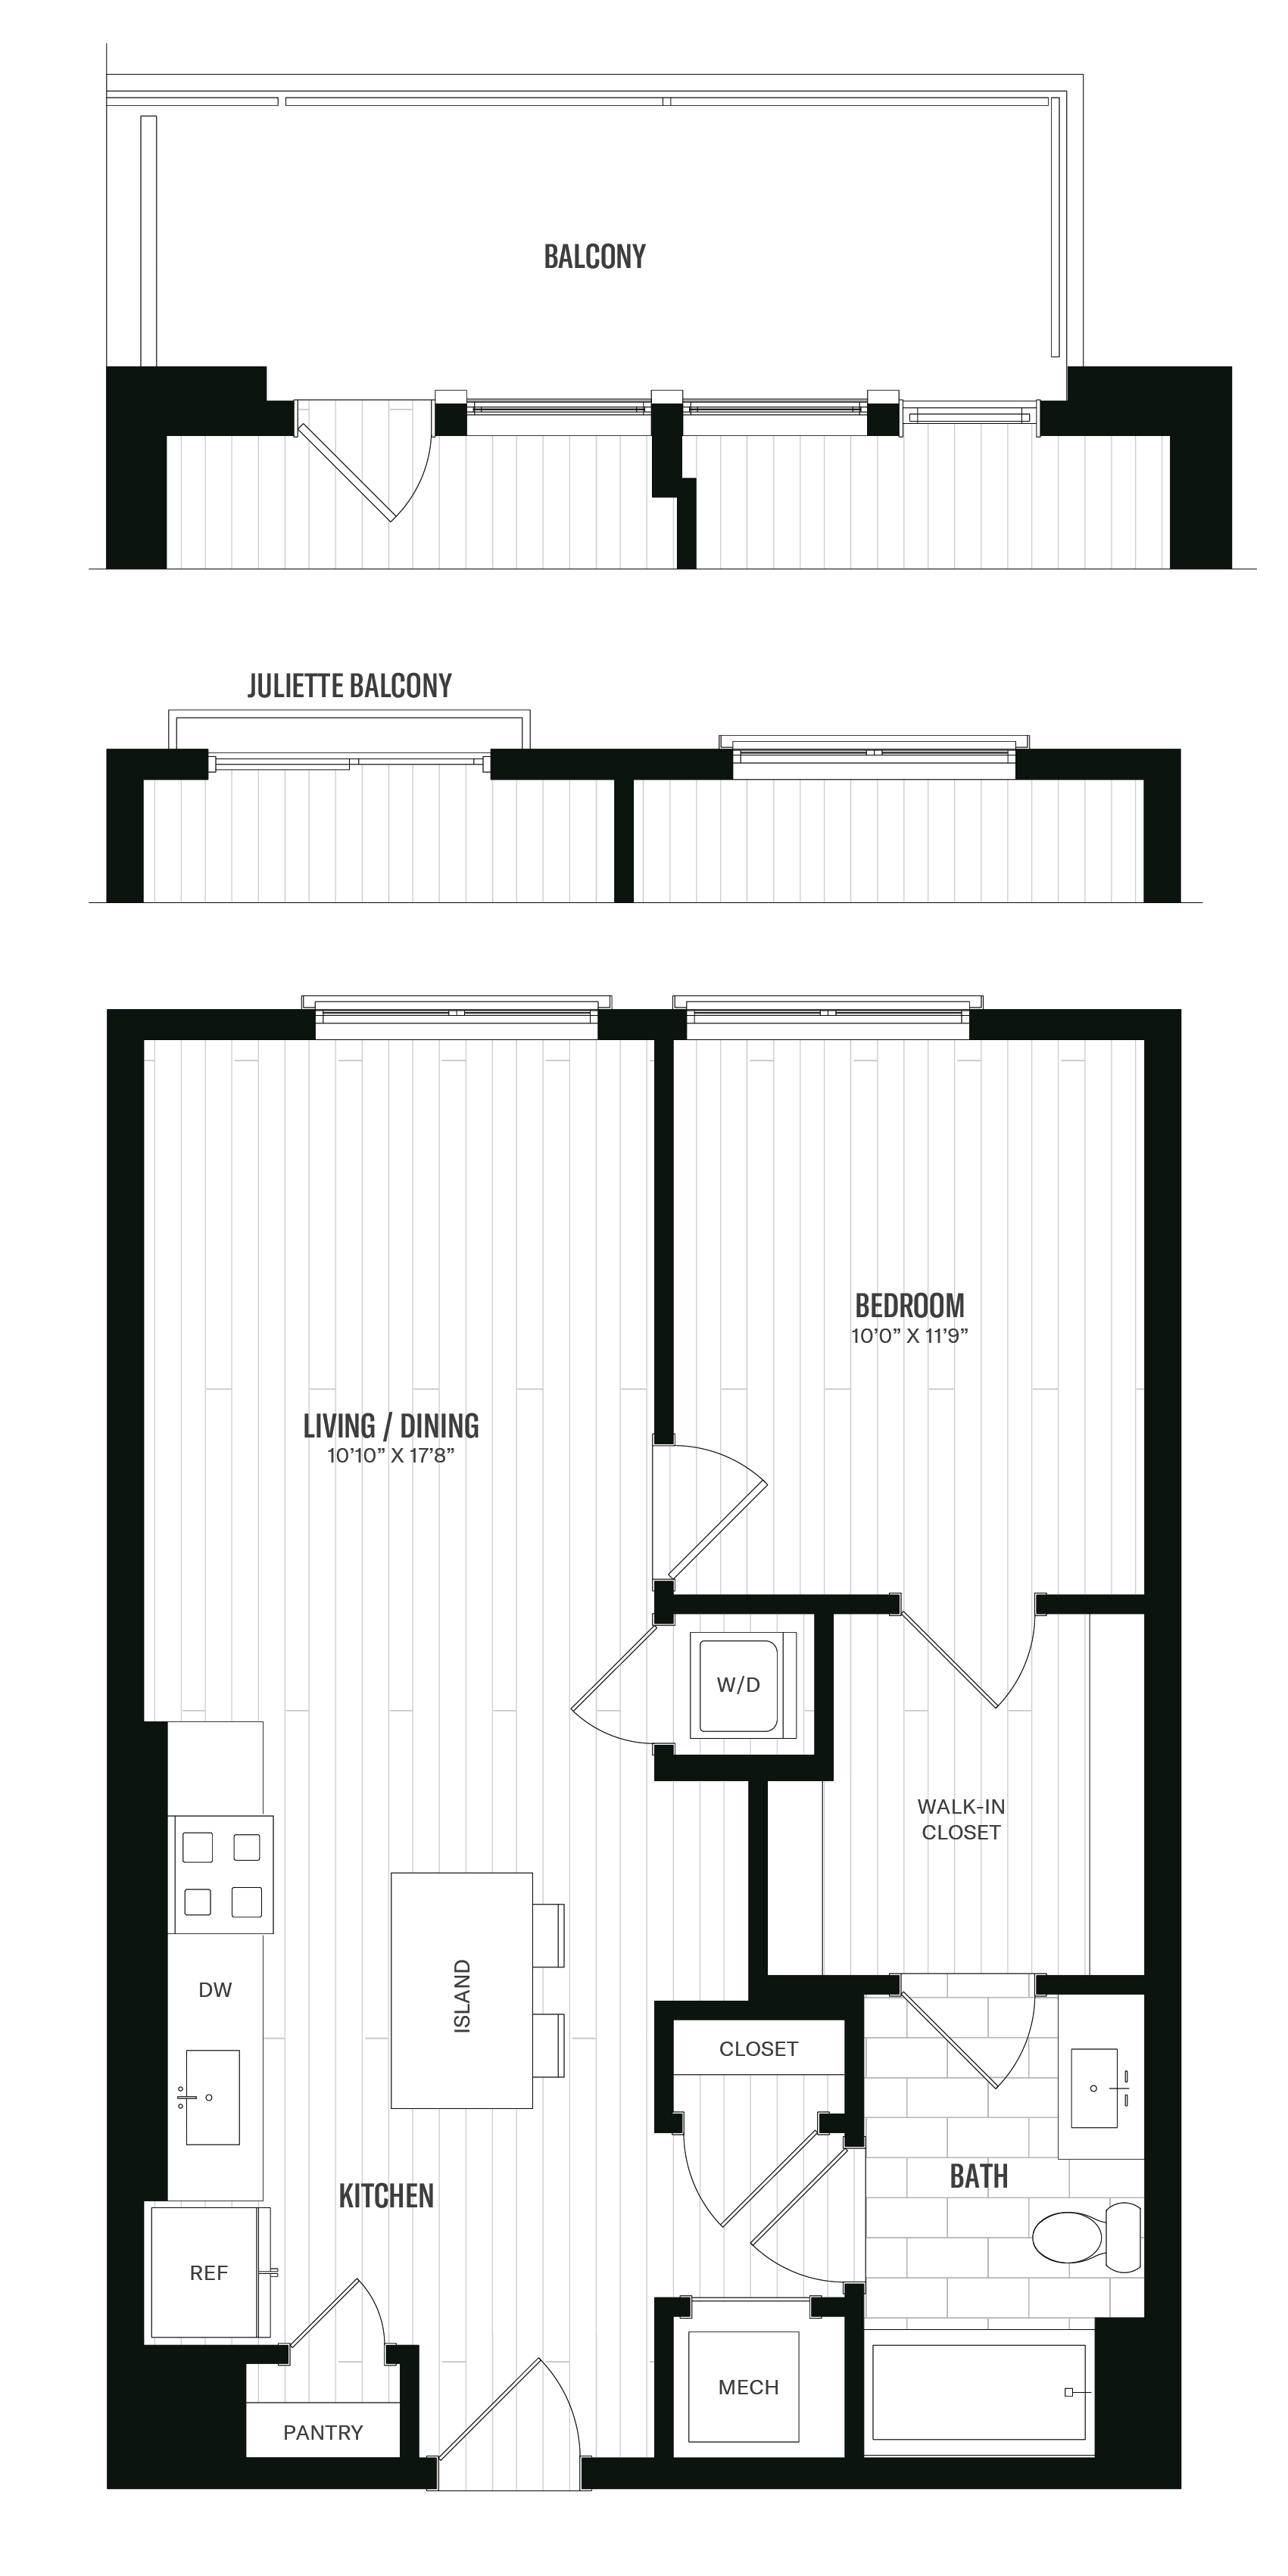 Floorplan image of unit 361